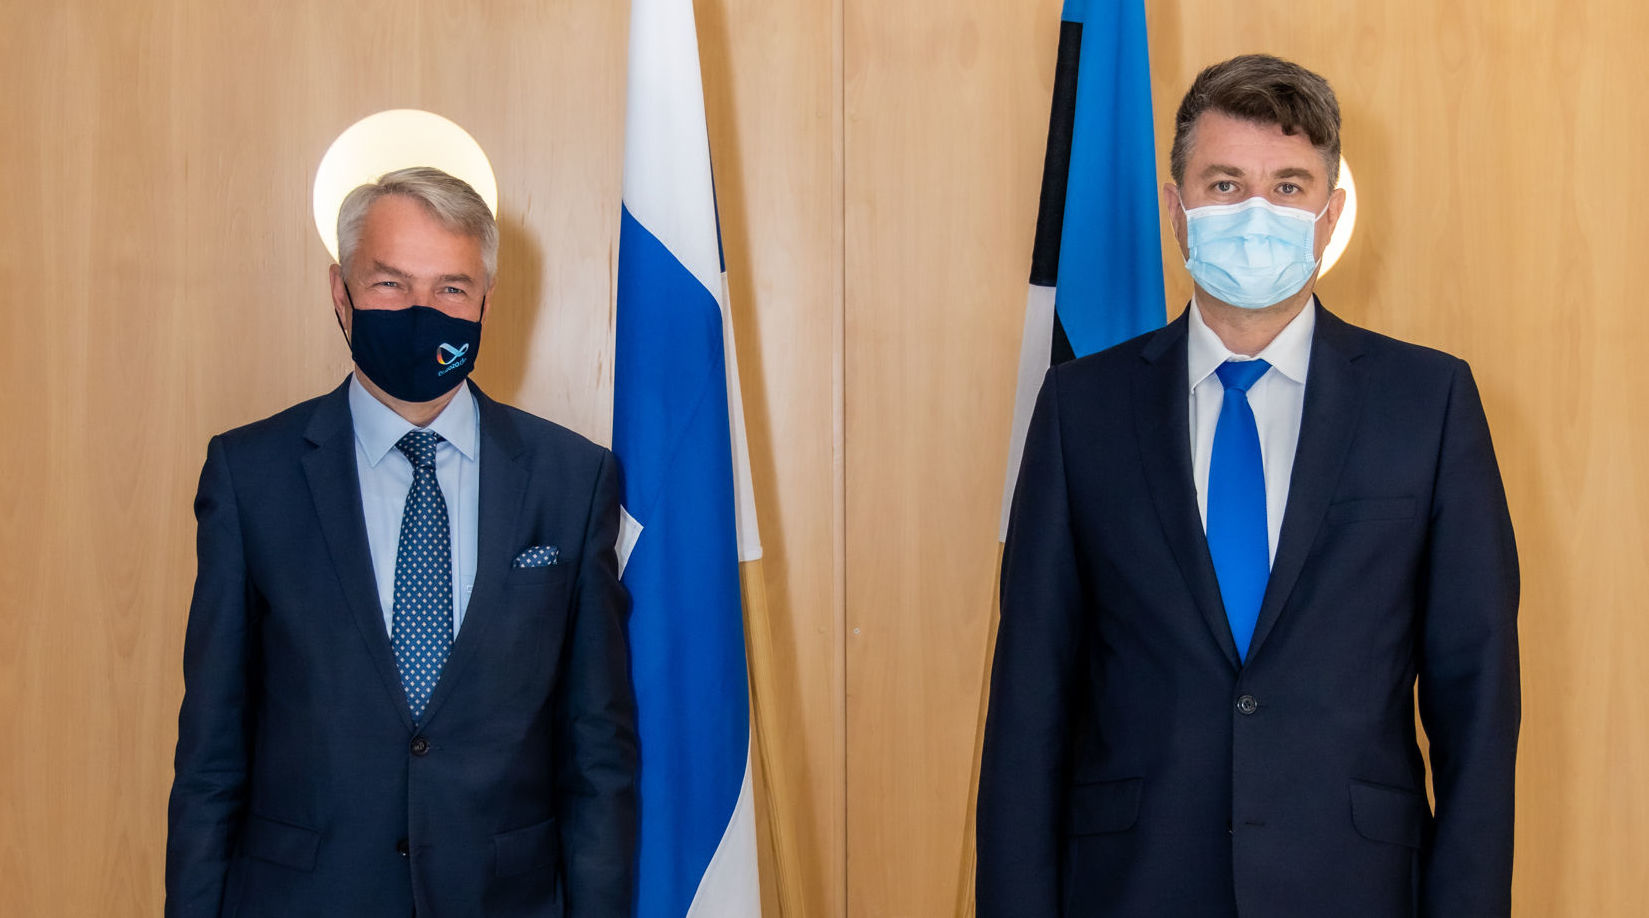 Министр иностранных дел Финляндии Пекка Хаависто (слева) и министр иностранных дел Эстонии Урмас Рейнсалу